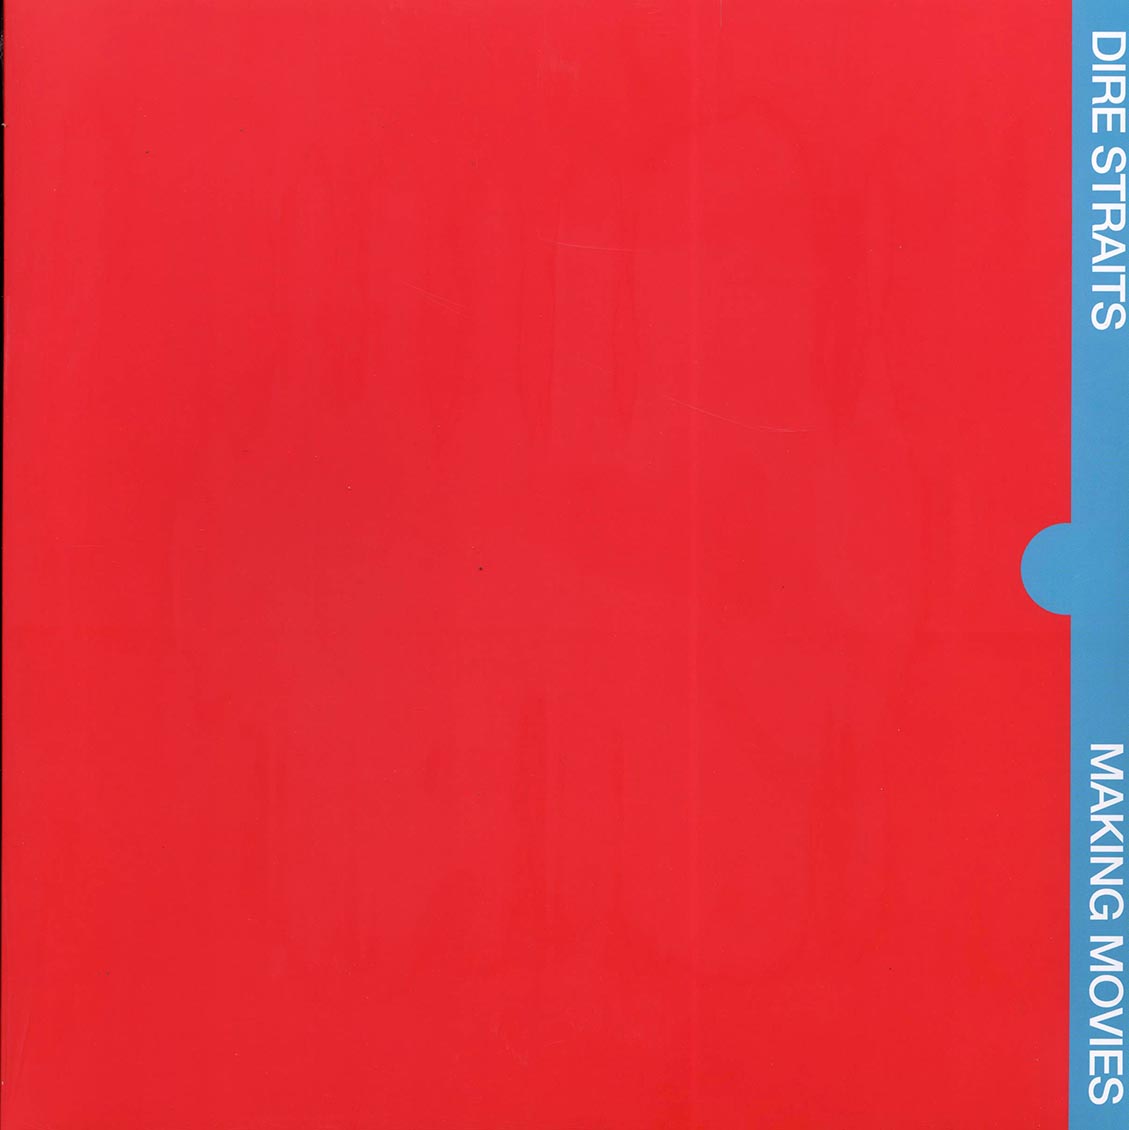 Dire Straits - Making Moves (180g) - Vinyl LP